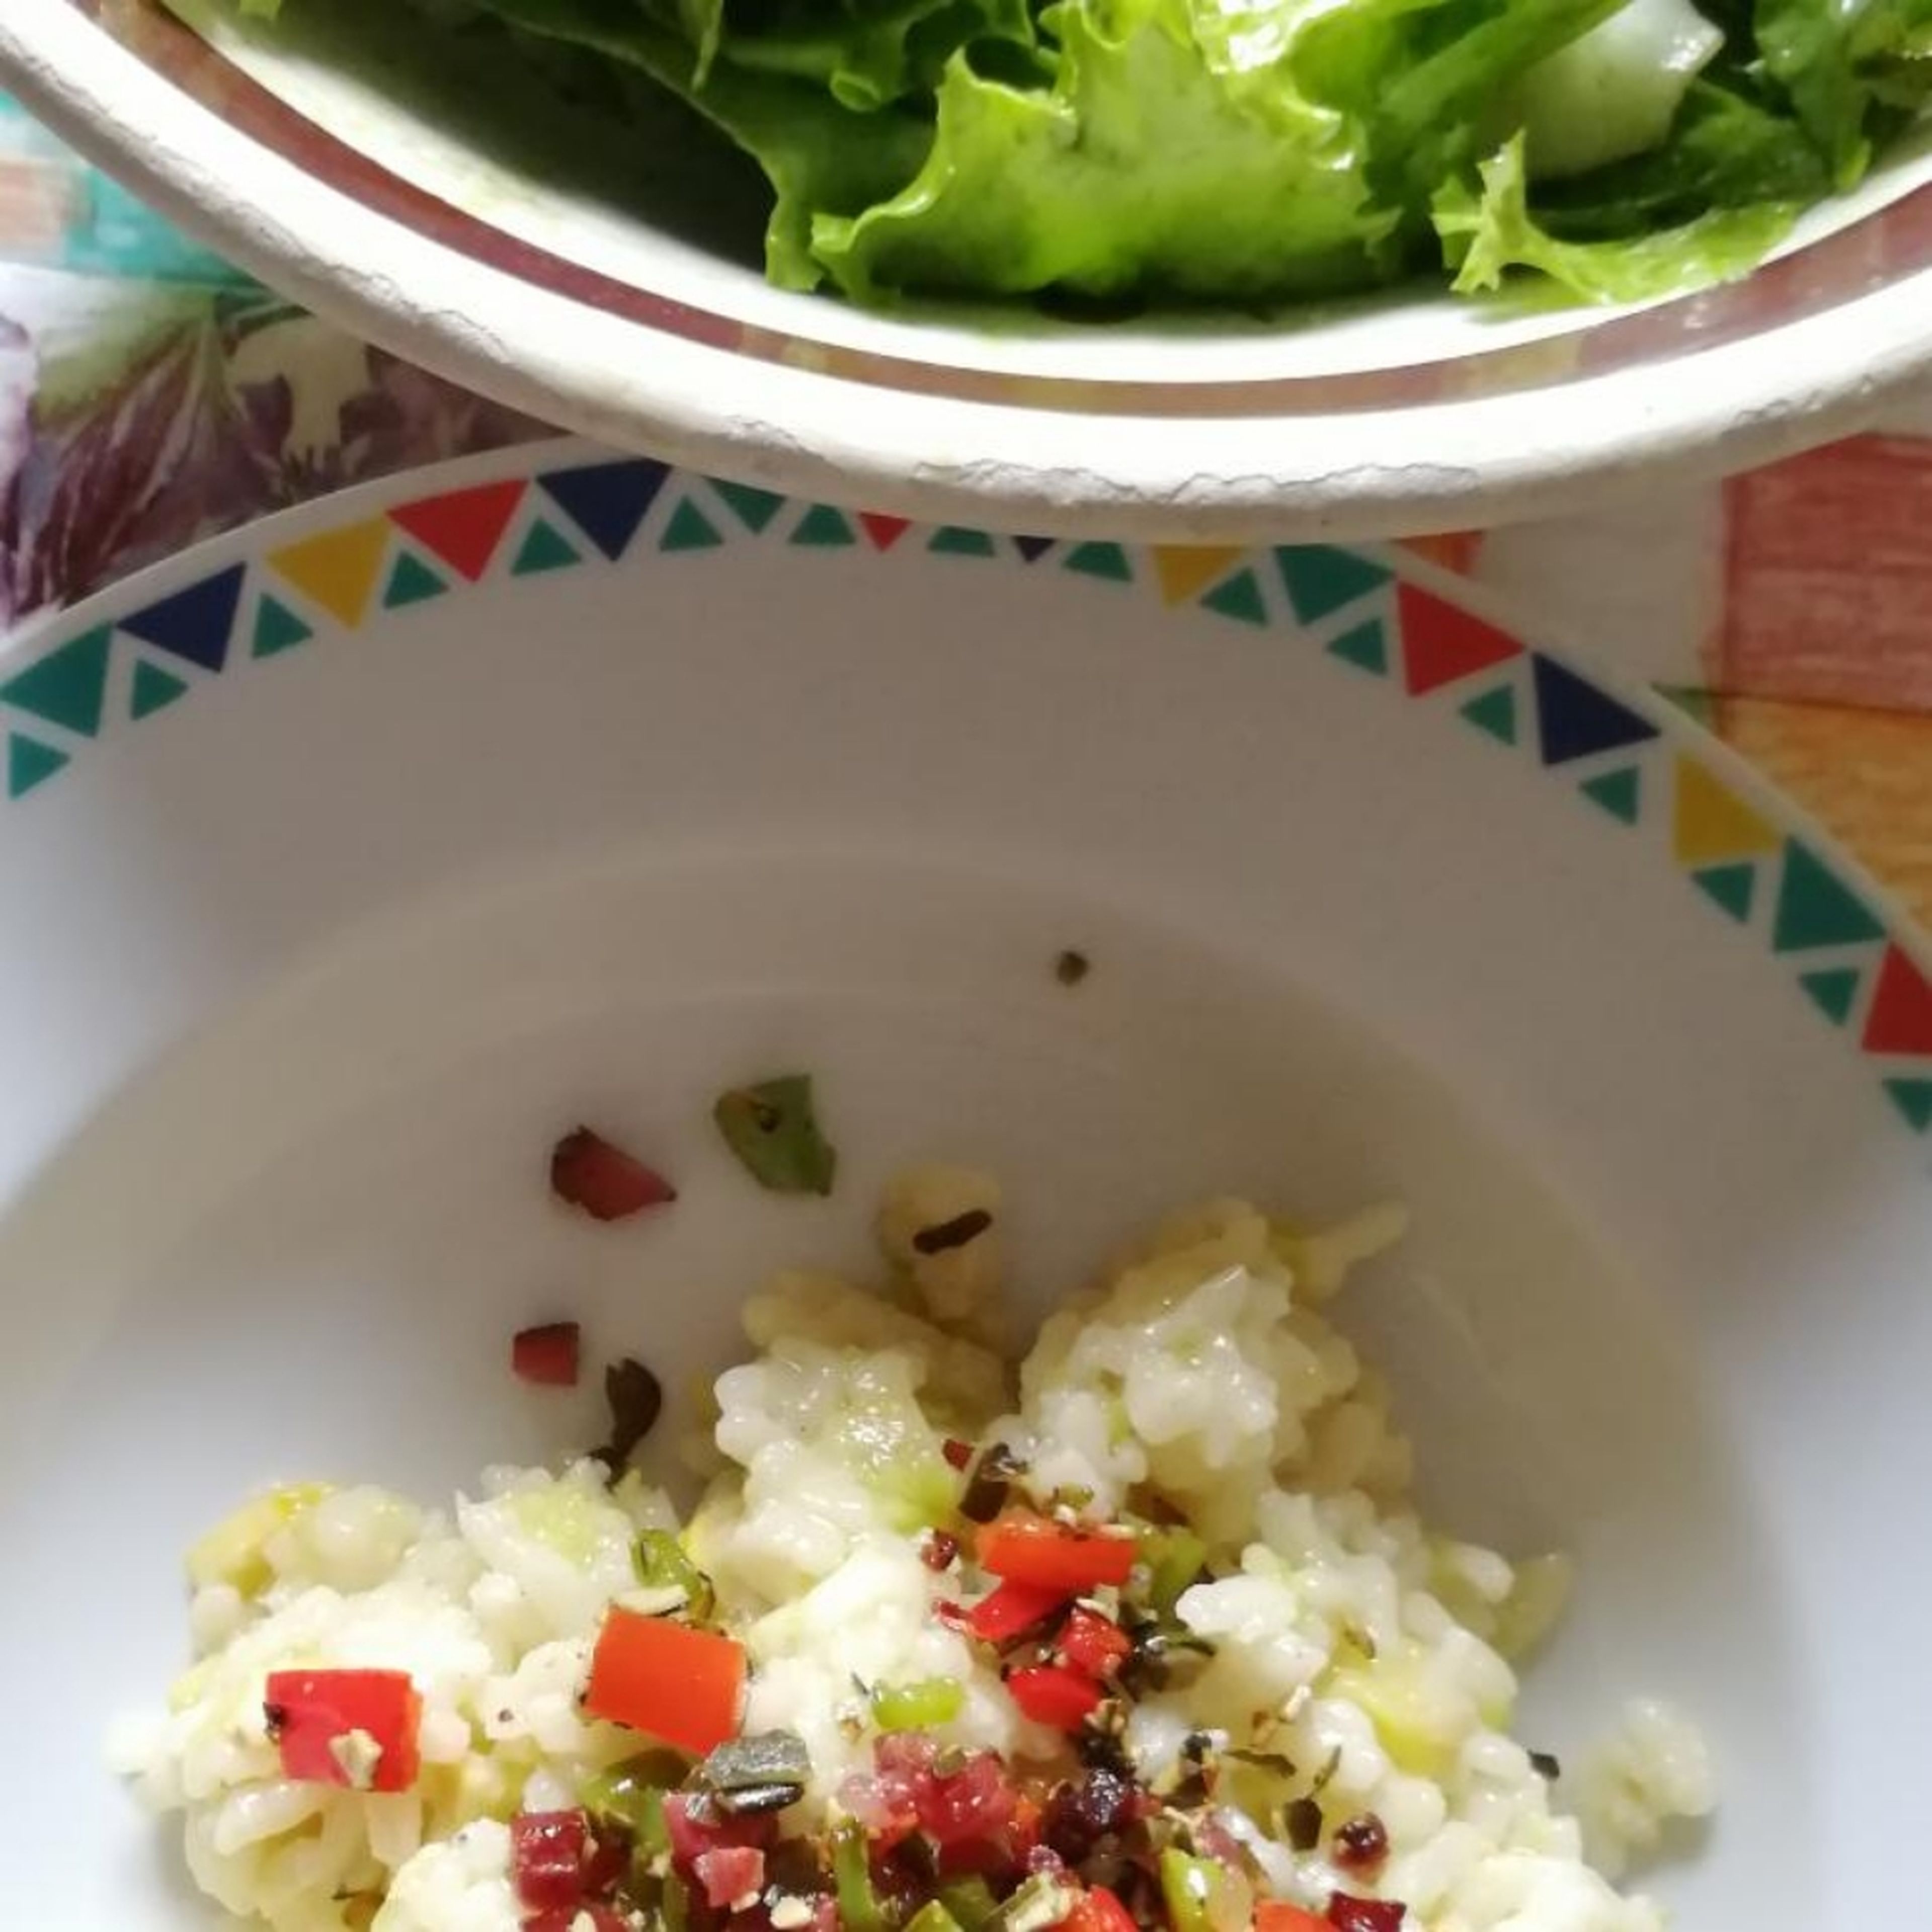 Risotto in tiefen Tellern anrichten, Specktopping darauf verteilen. Dazu passt gut ein Grüner Salat mit Kirschtomaten. Guten Appetit!